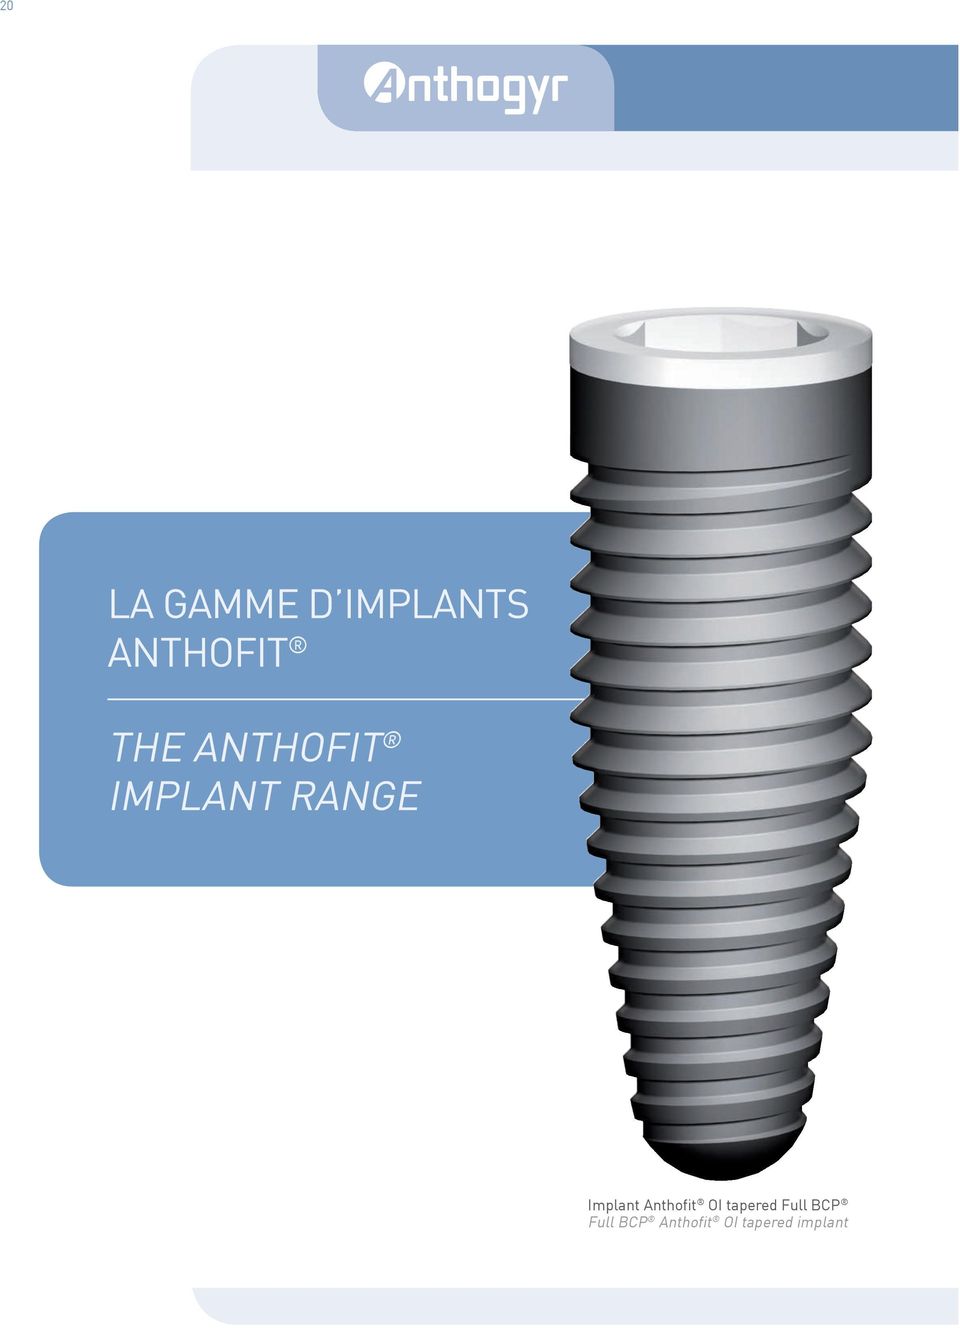 range Implant Anthofit OI tapered